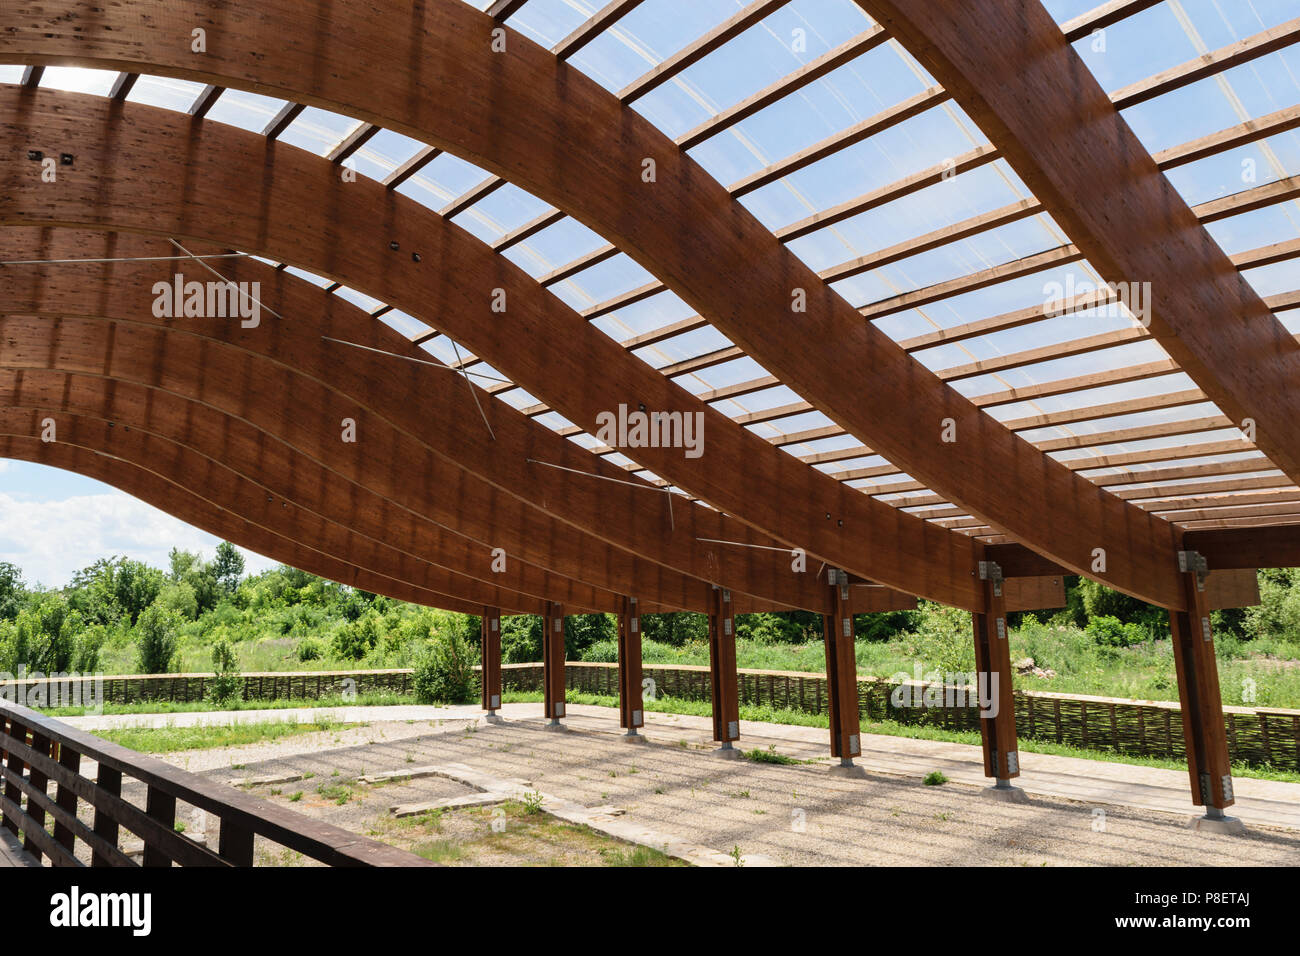 Massive Holzbalken Dachstuhl mit S-förmig gebogen und mit transparenten Polycarbonat Blatt abgedeckt Stockfoto